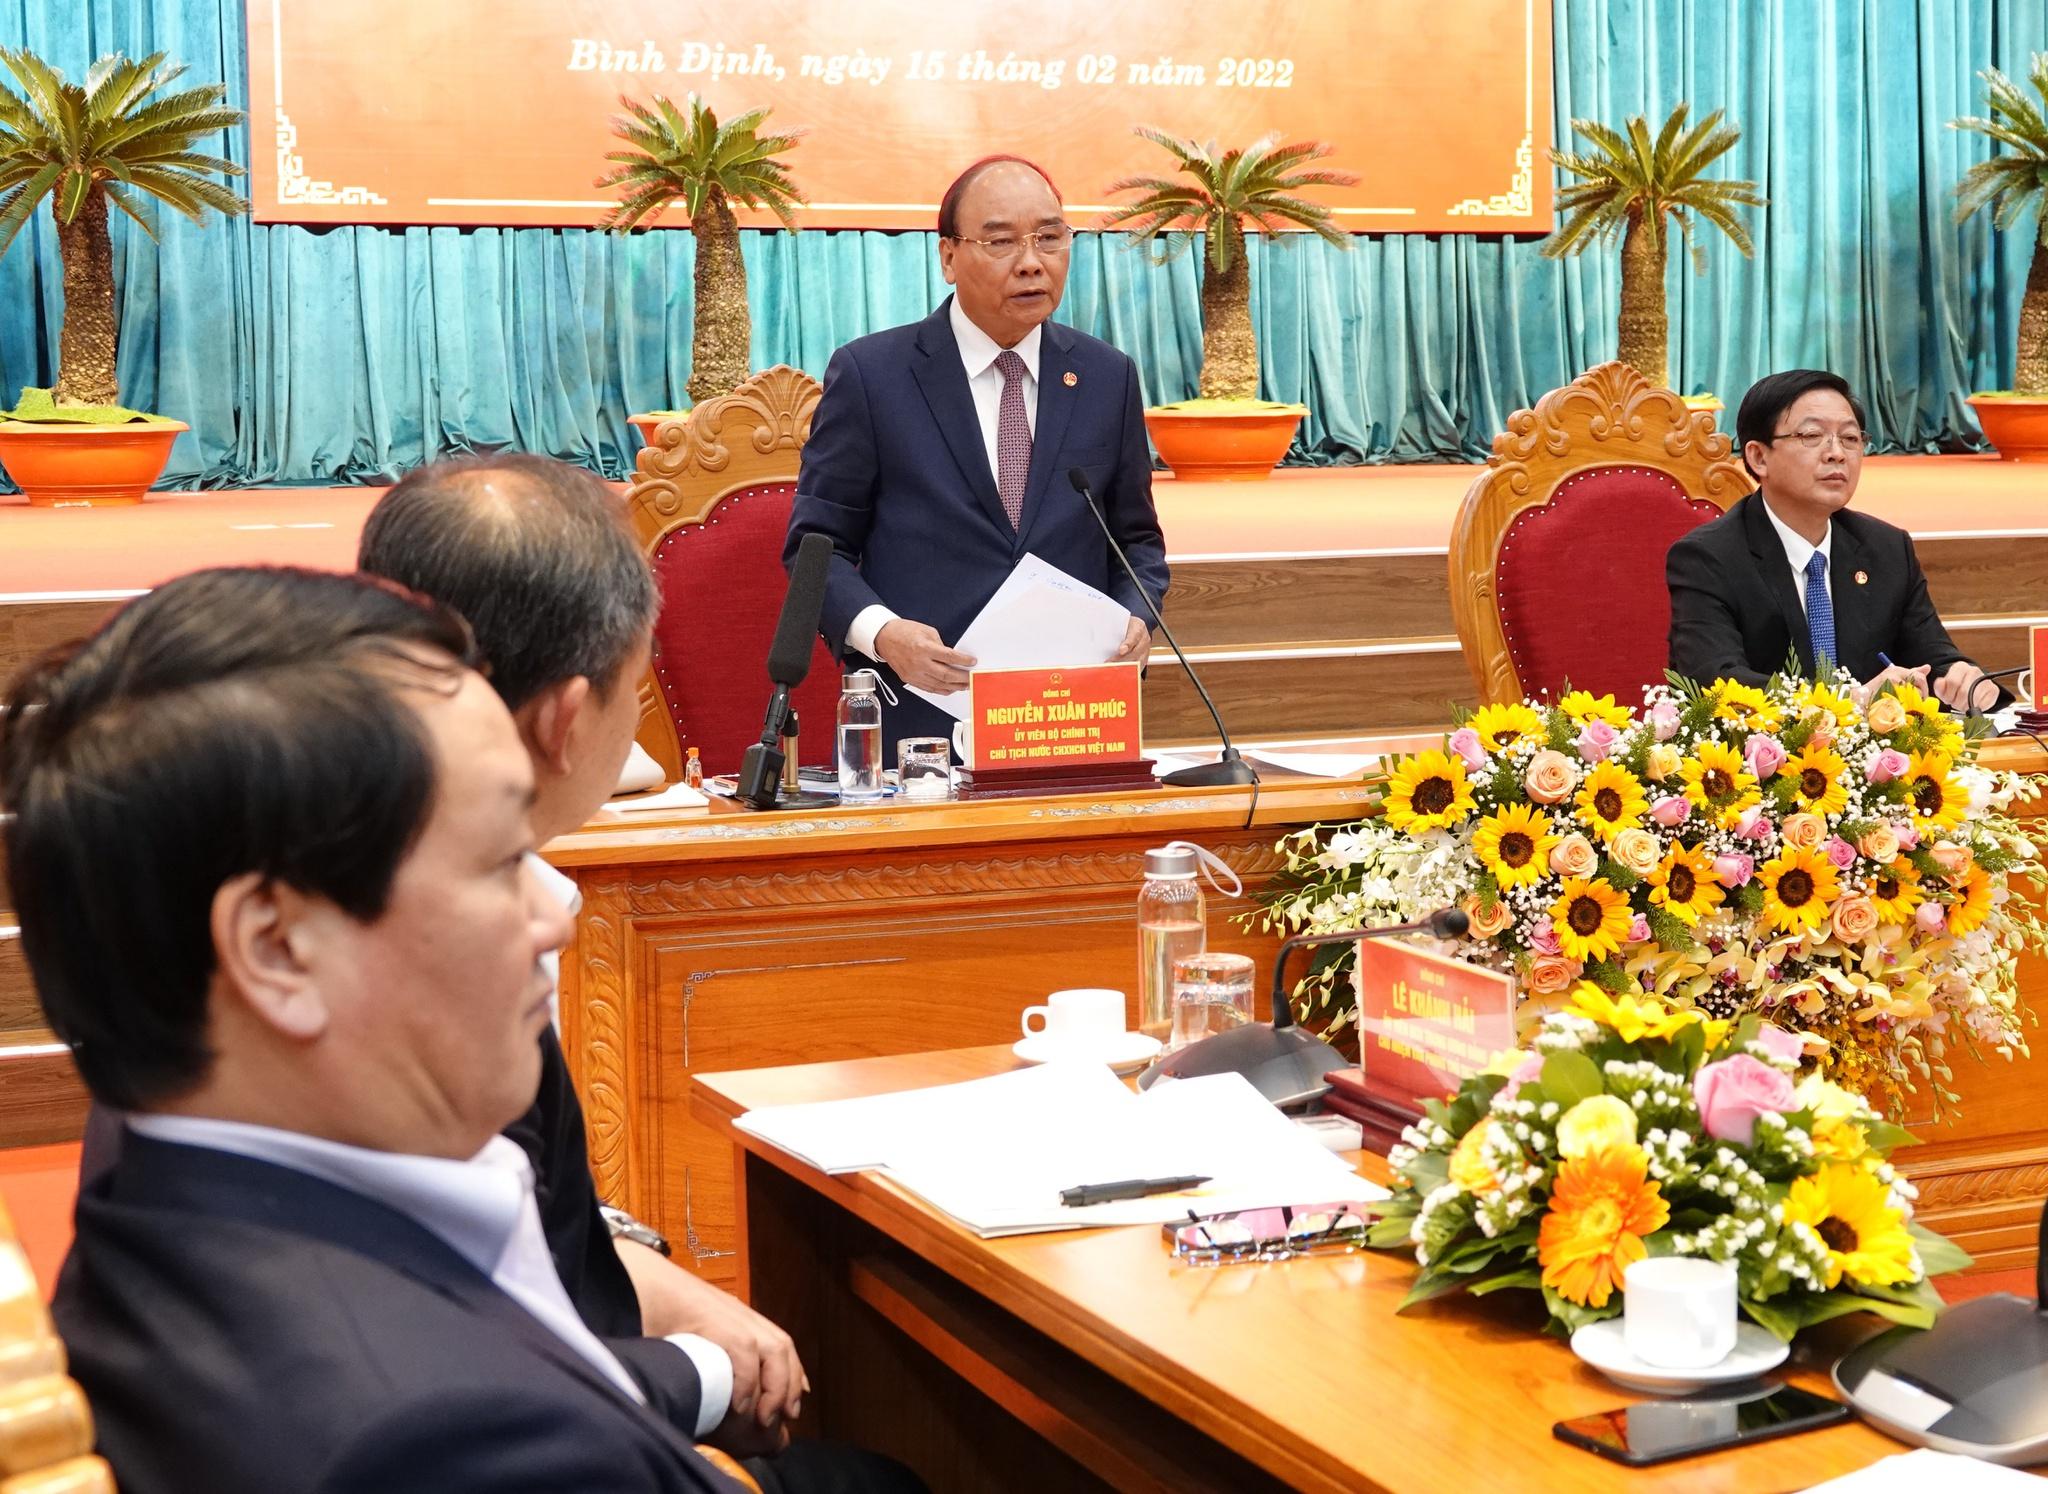 Chủ tịch nước Nguyễn Xuân Phúc: Tỉnh Bình Định cần mục tiêu phát triển bền vững - ảnh 1